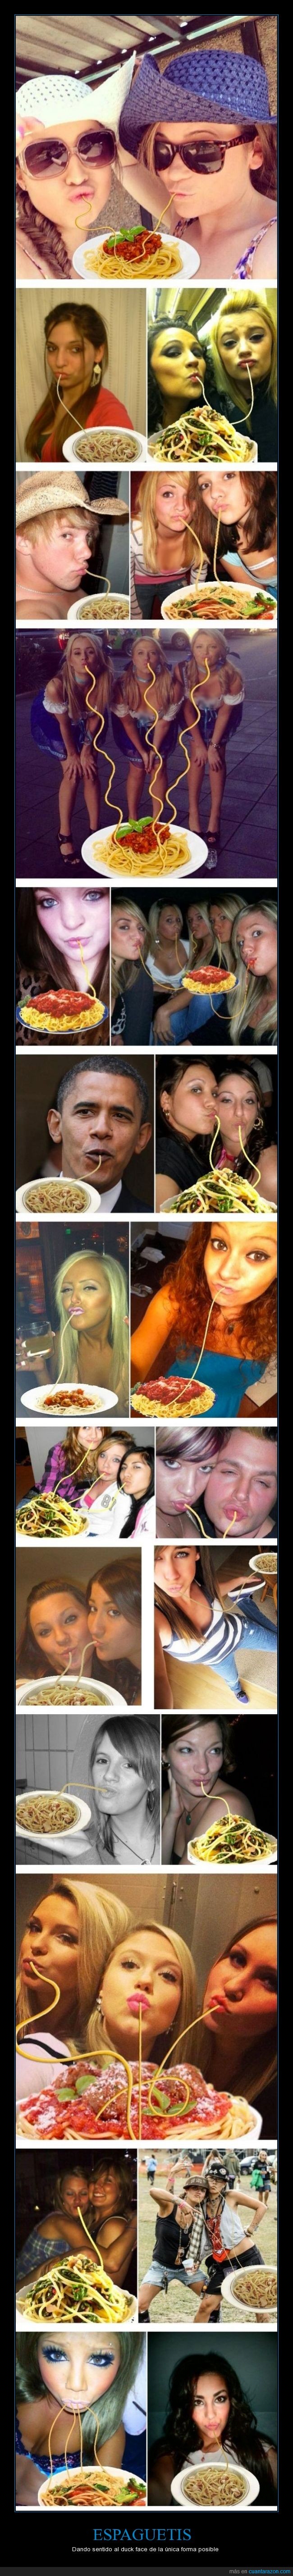 spaghetti,beso,labiosl,boca,comida,chicas,pose,duck face